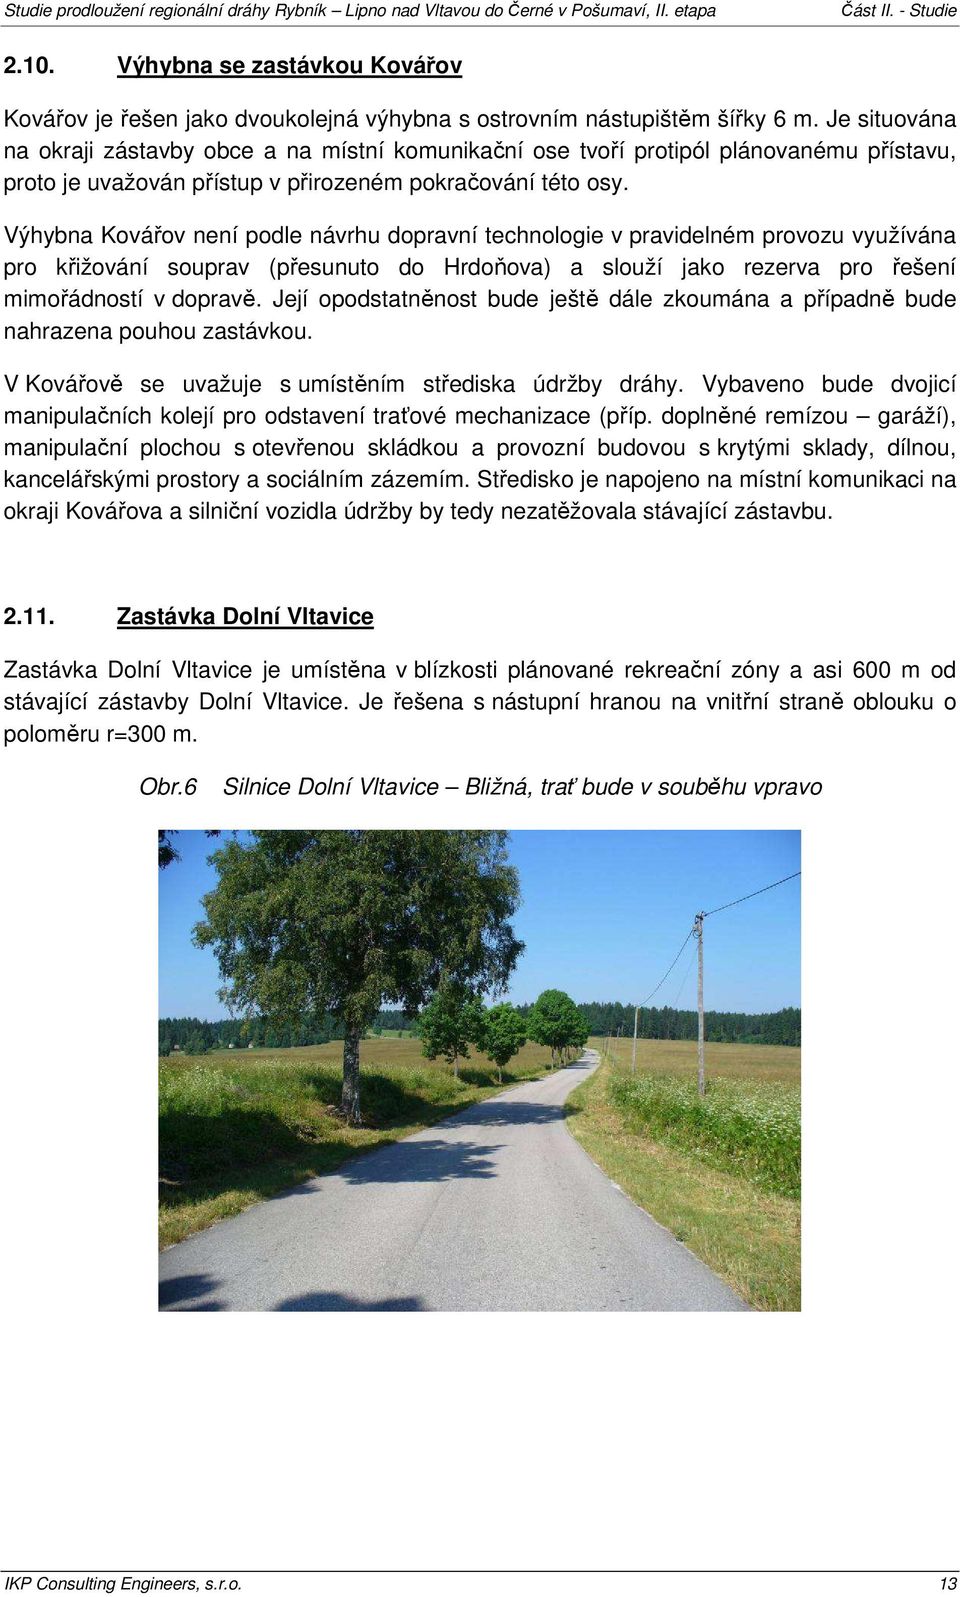 Výhybna Kovářov není podle návrhu dopravní technologie v pravidelném provozu využívána pro křižování souprav (přesunuto do Hrdoňova) a slouží jako rezerva pro řešení mimořádností v dopravě.